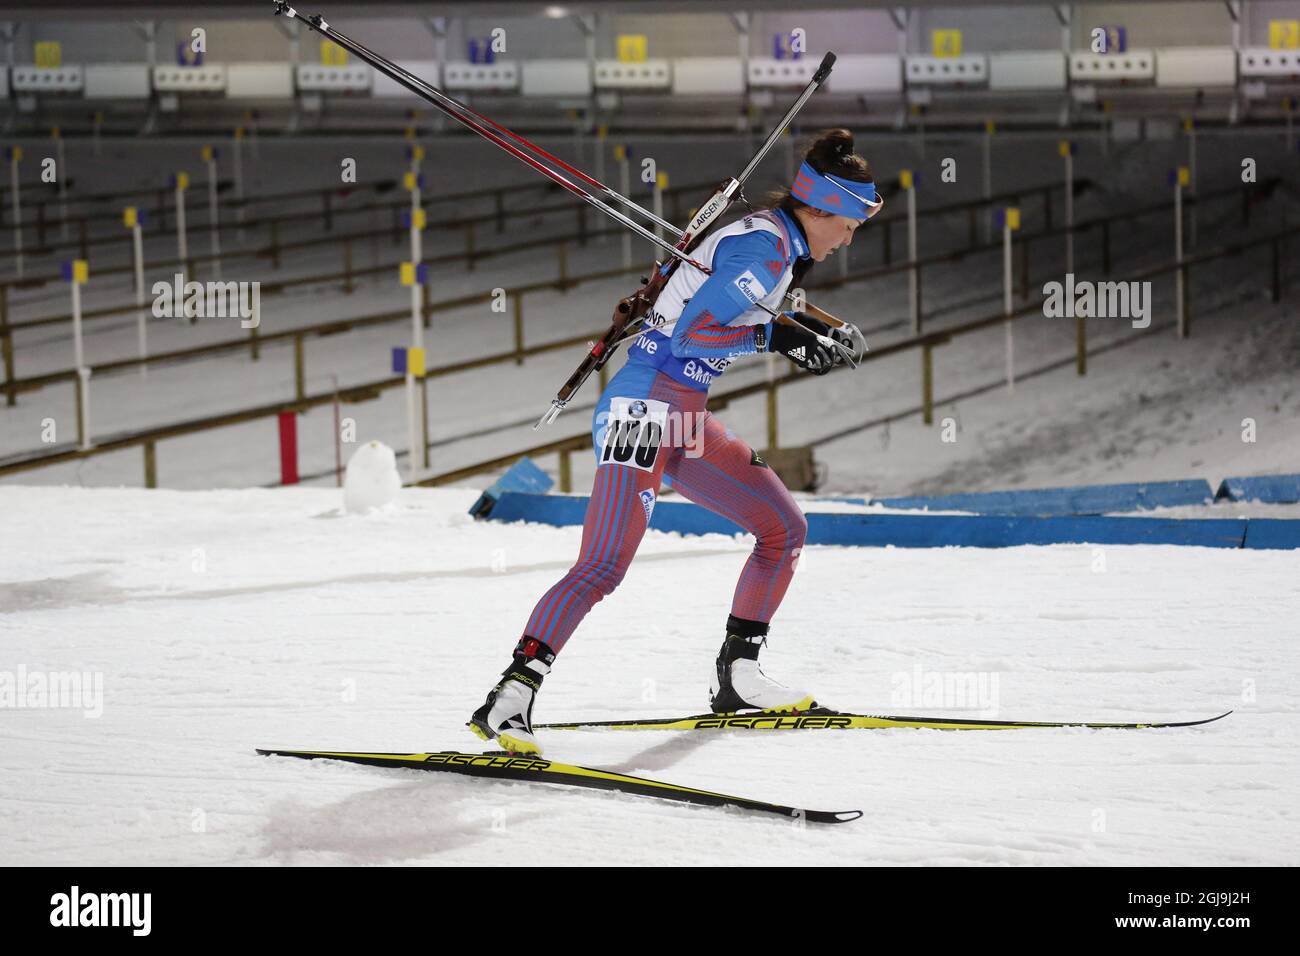 Tatiana Akimova della Russia in azione durante la gara di sprint femminile da 7.5 km alla IBU Biathlon World Cup di Ostersund, Svezia, il 5 dicembre 2015. Foto: Christine Olsson / TT / code 10430 Foto Stock